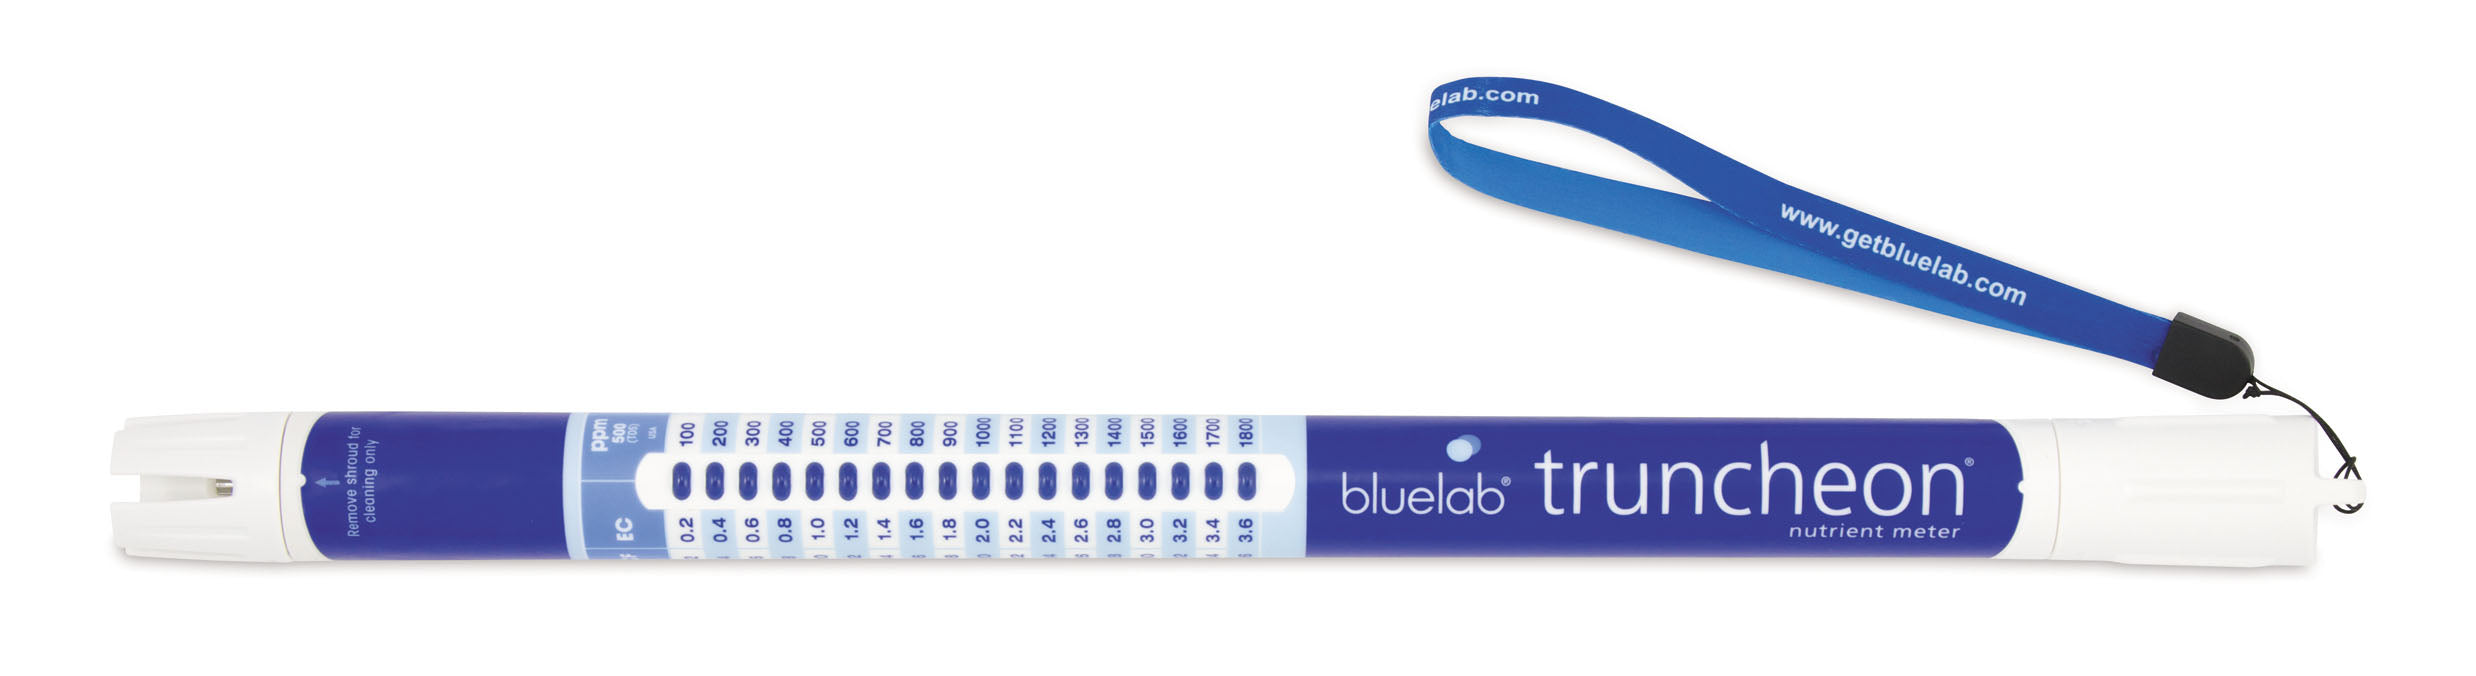 BlueLab Truncheon meter